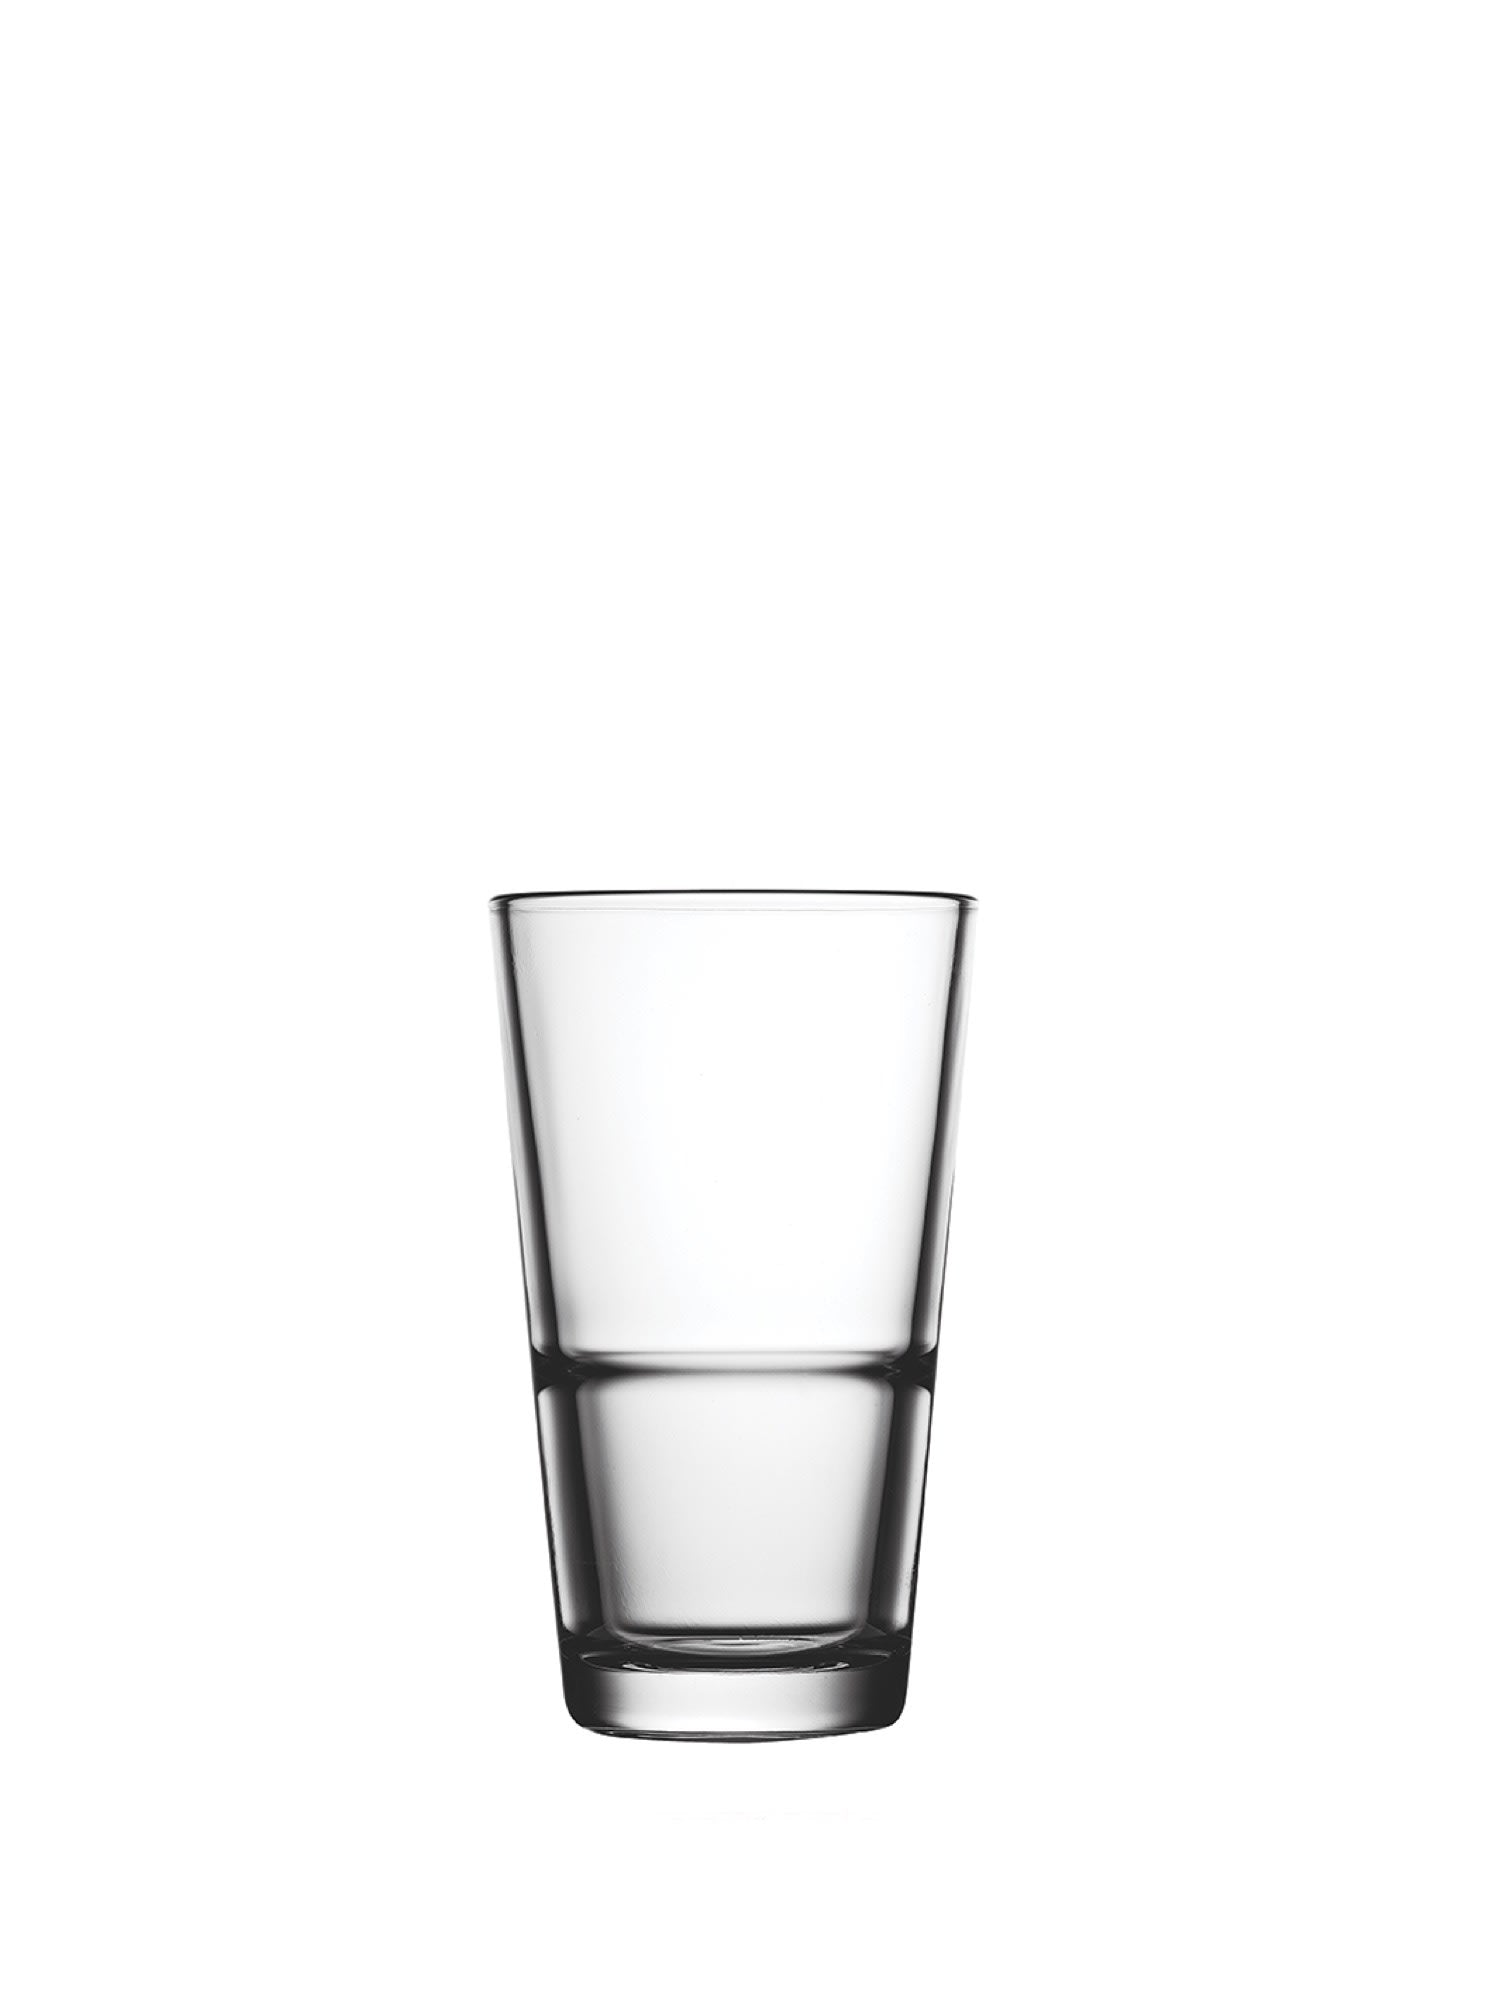 Fremstillet af høj kvalitet glas, der er nemt at rengøre og vedligeholde